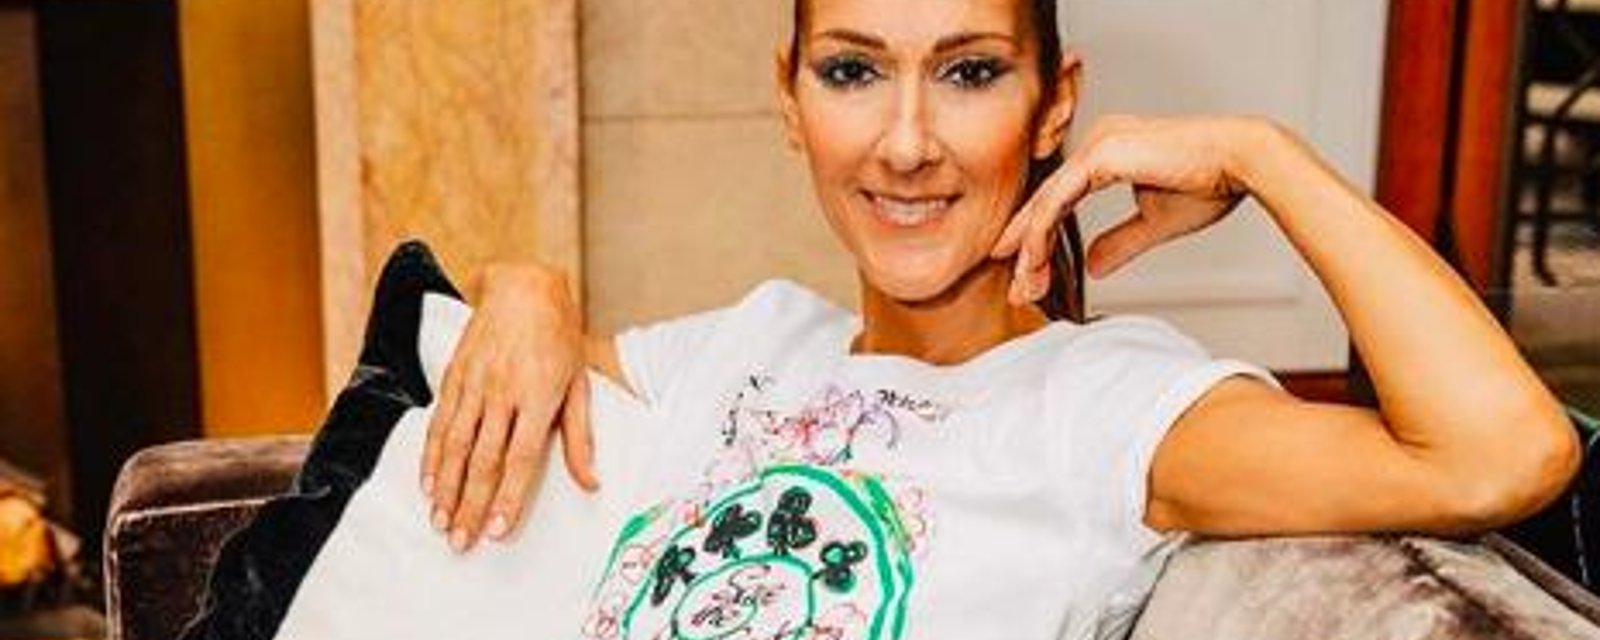 RUMEUR: Céline Dion serait en couple avec un comédien très connu